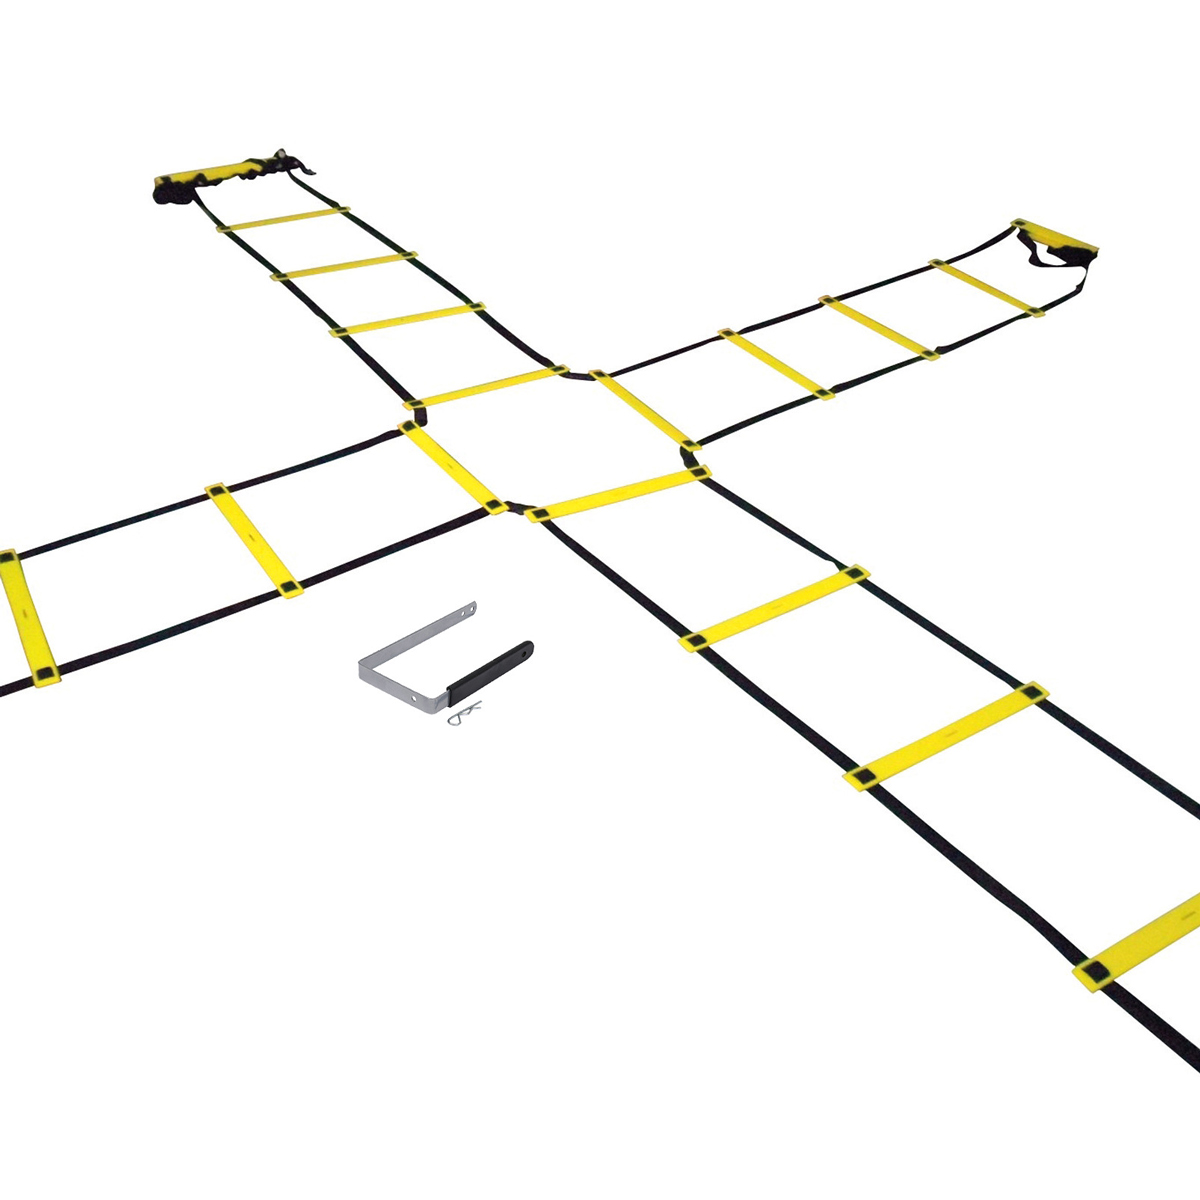 Koordinationsleiter "Agility" Einzel-Leiter 4m schwarz/gelb